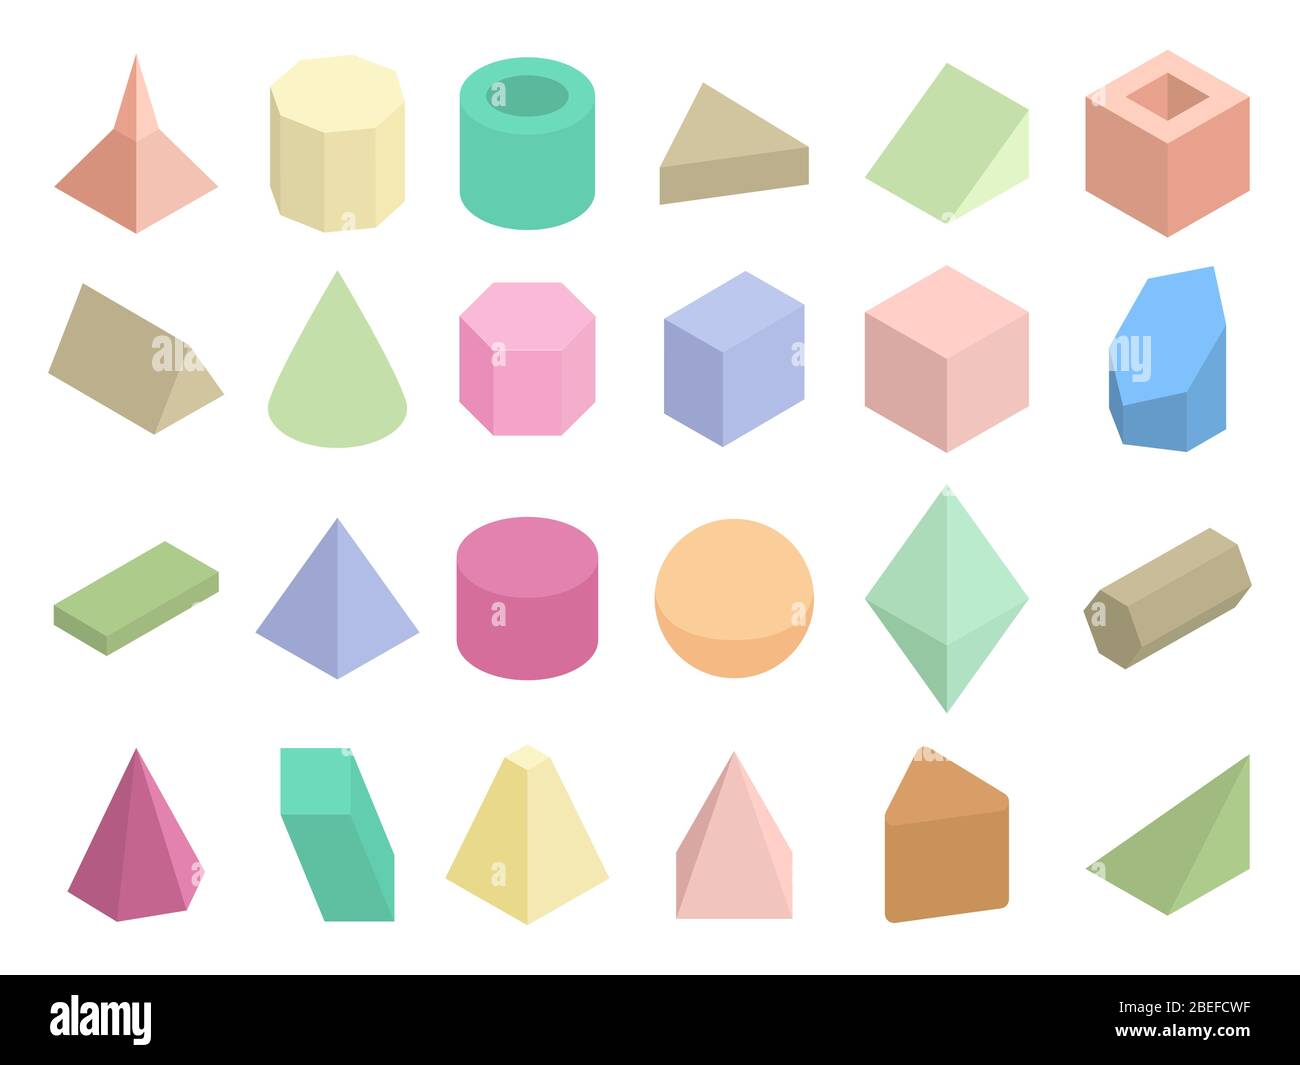 Vektorsatz für isometrische 3d-geometrische Farbformen. Isometrische Abbildung Pyramide und Dreieck Abbildung Stock Vektor